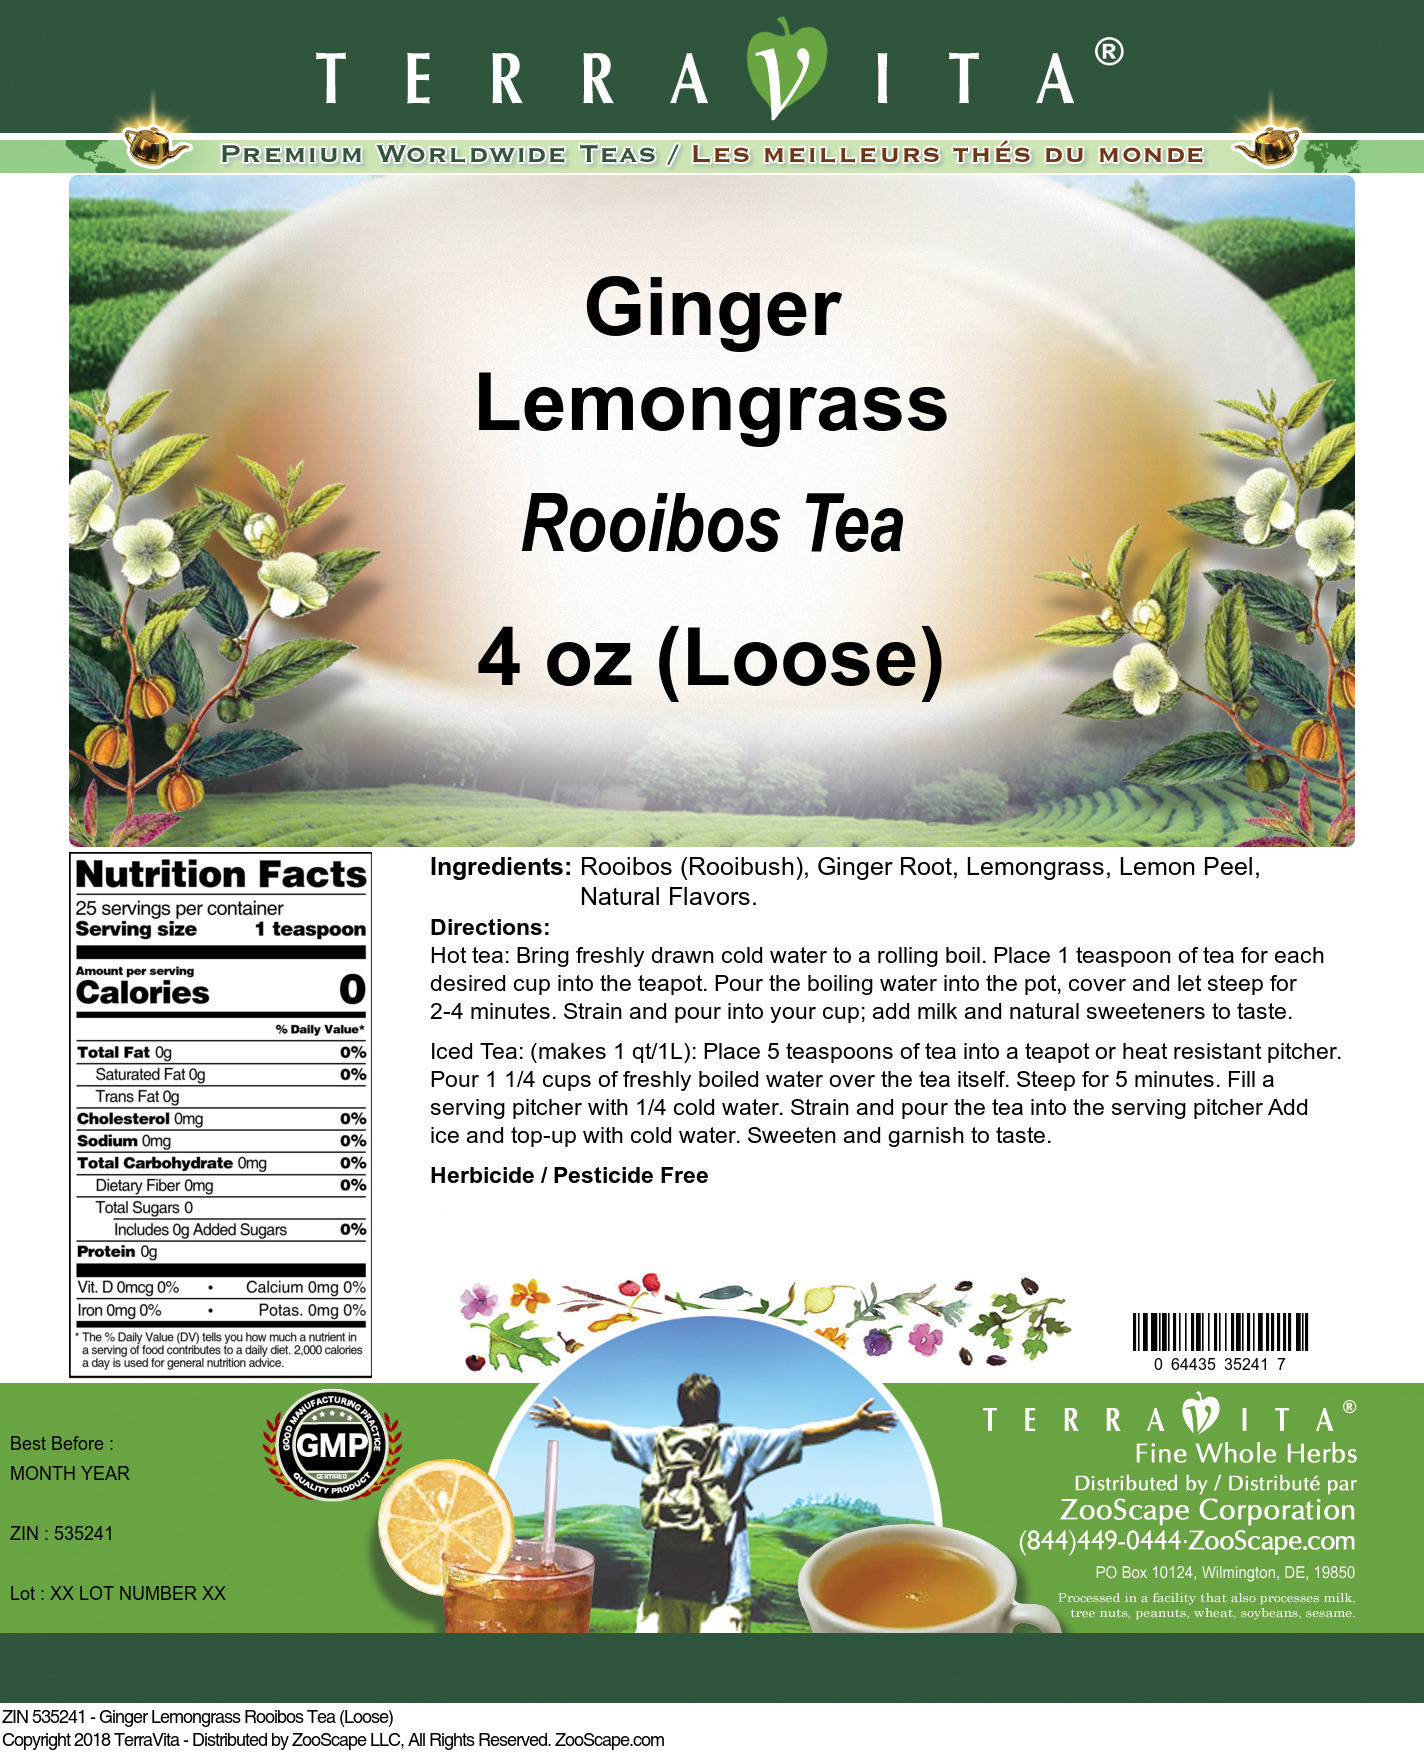 Ginger Lemongrass Rooibos Tea (Loose) - Label